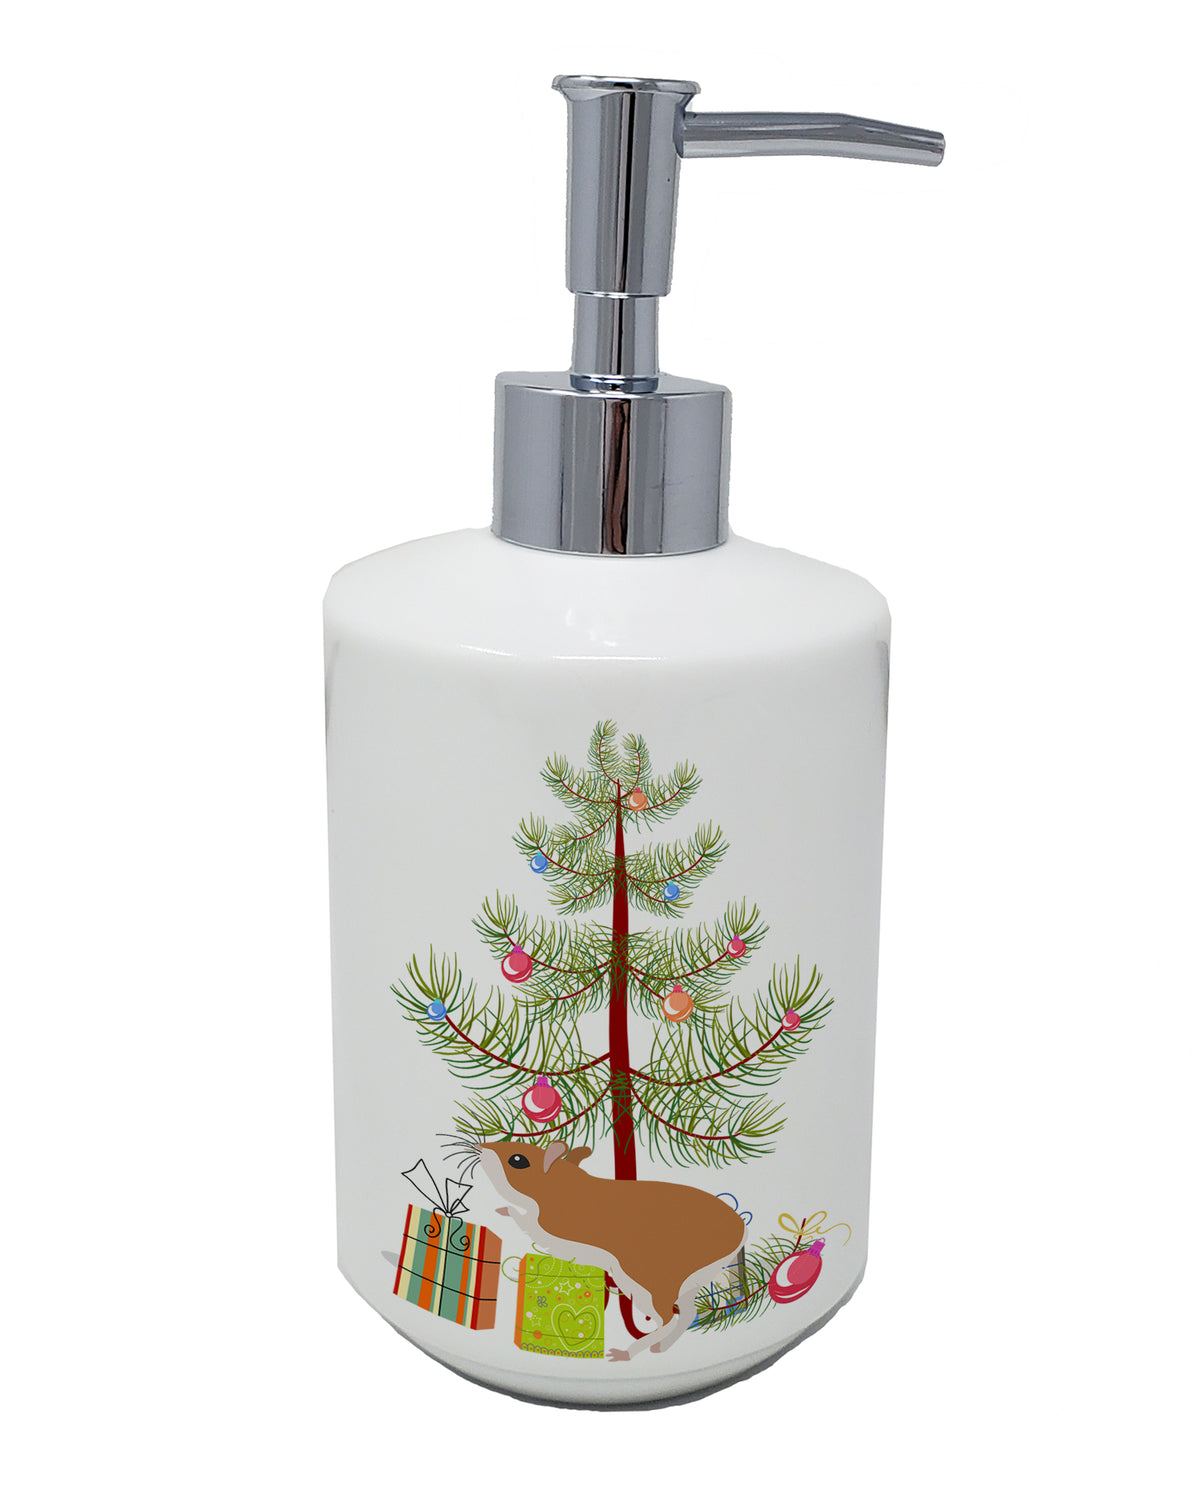 Buy this White Legged Hamster Merry Christmas Ceramic Soap Dispenser